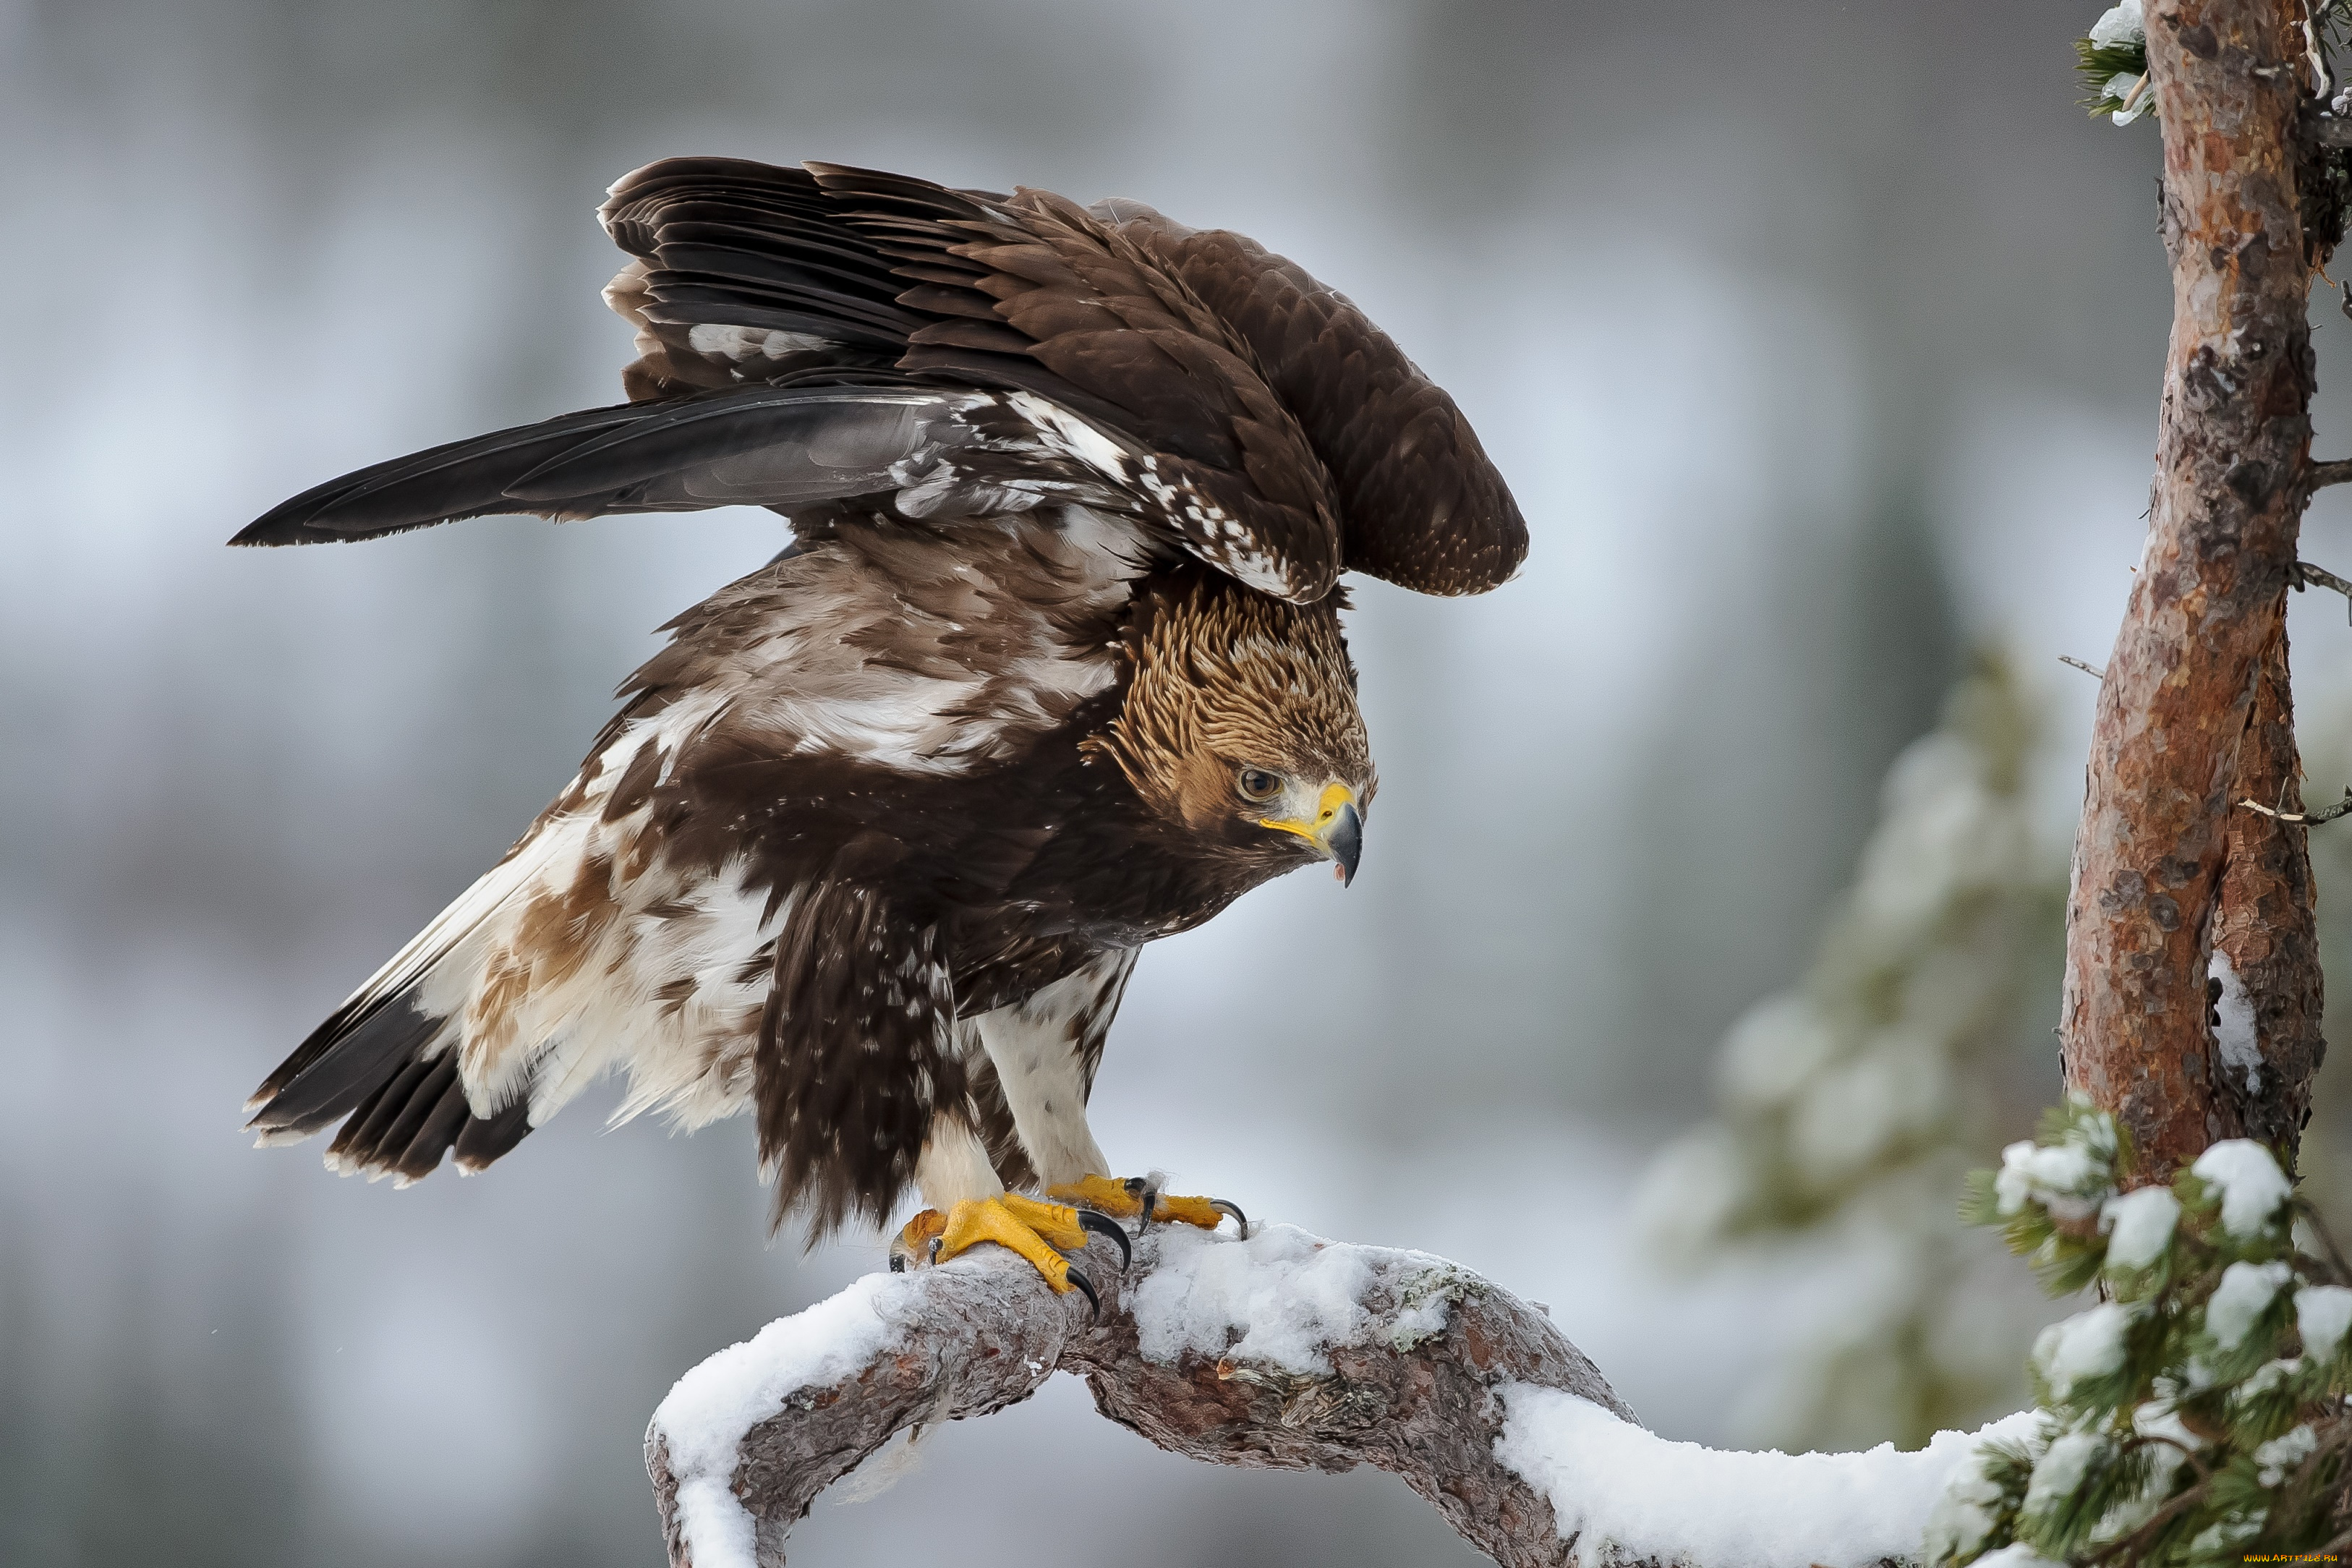 животные, птицы, -, хищники, птица, орел, зима, крылья, перья, сосна, ель, снег, мороз, bird, eagle, winter, snow